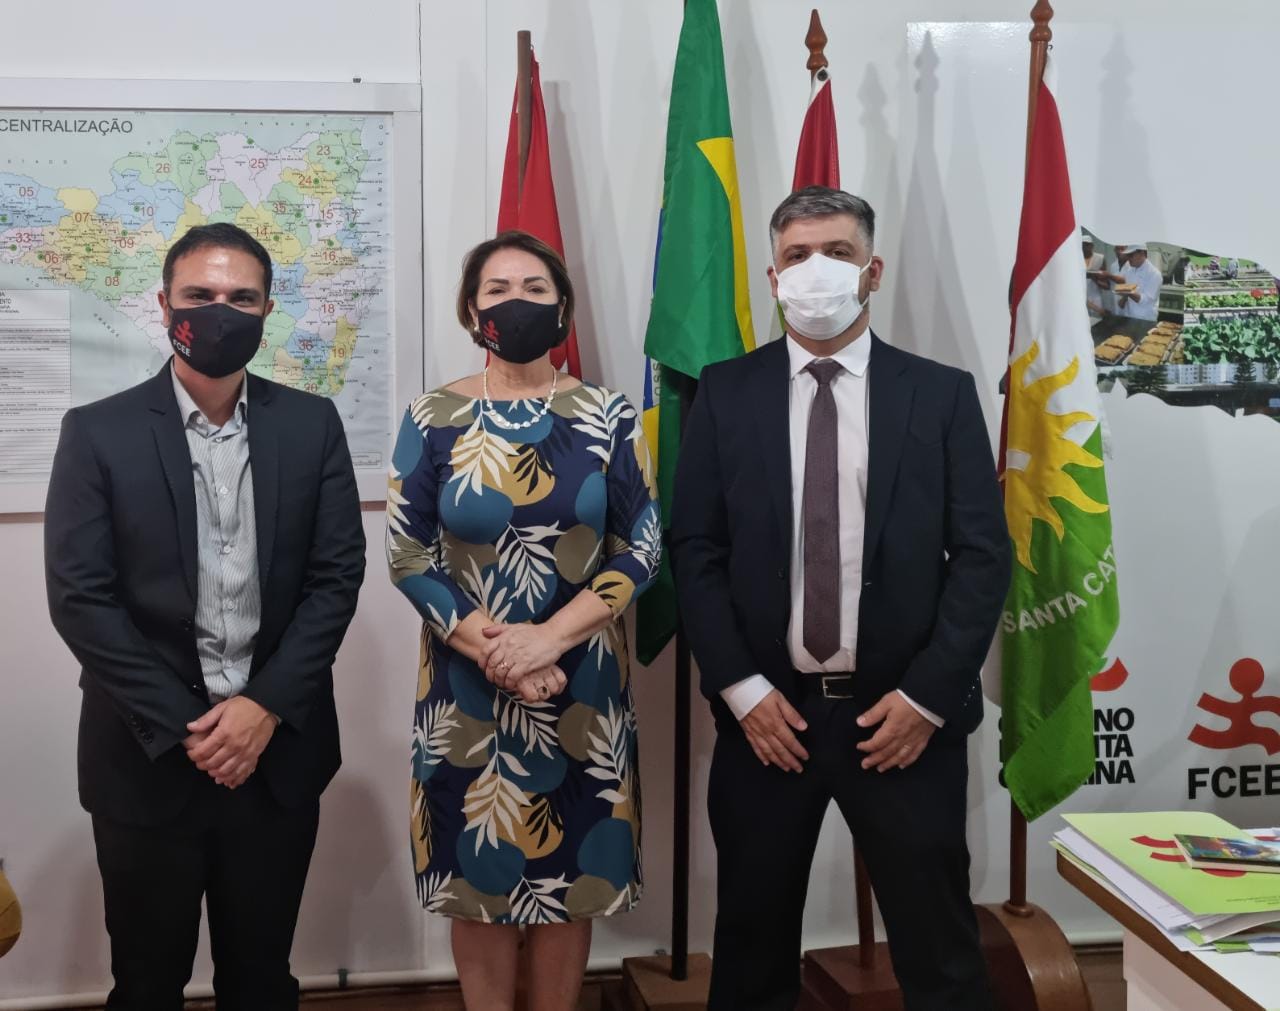 Três pessoas em pé, máscara, ambiente interno, bandeiras ao fundo